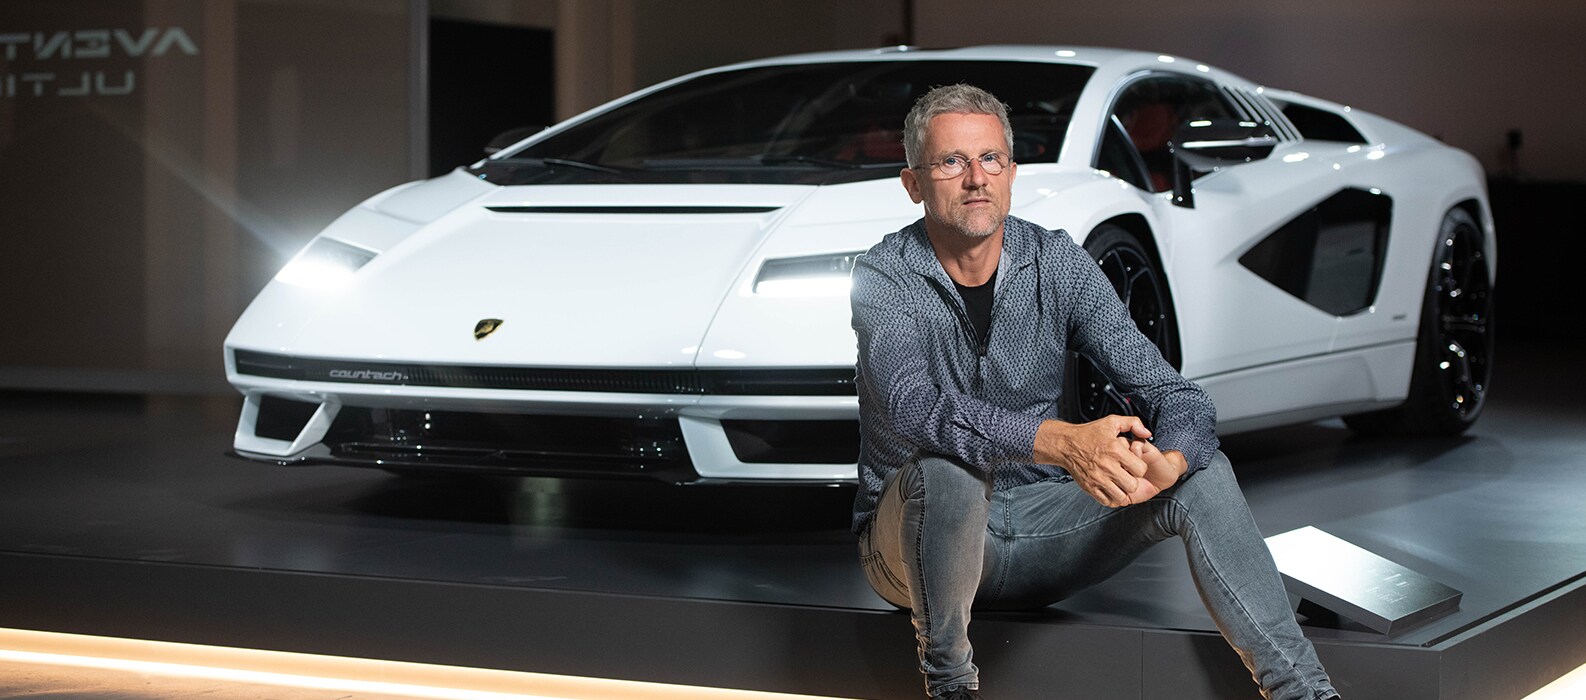 Lamborghini and Carlo Ratti: new technologies meet architecture